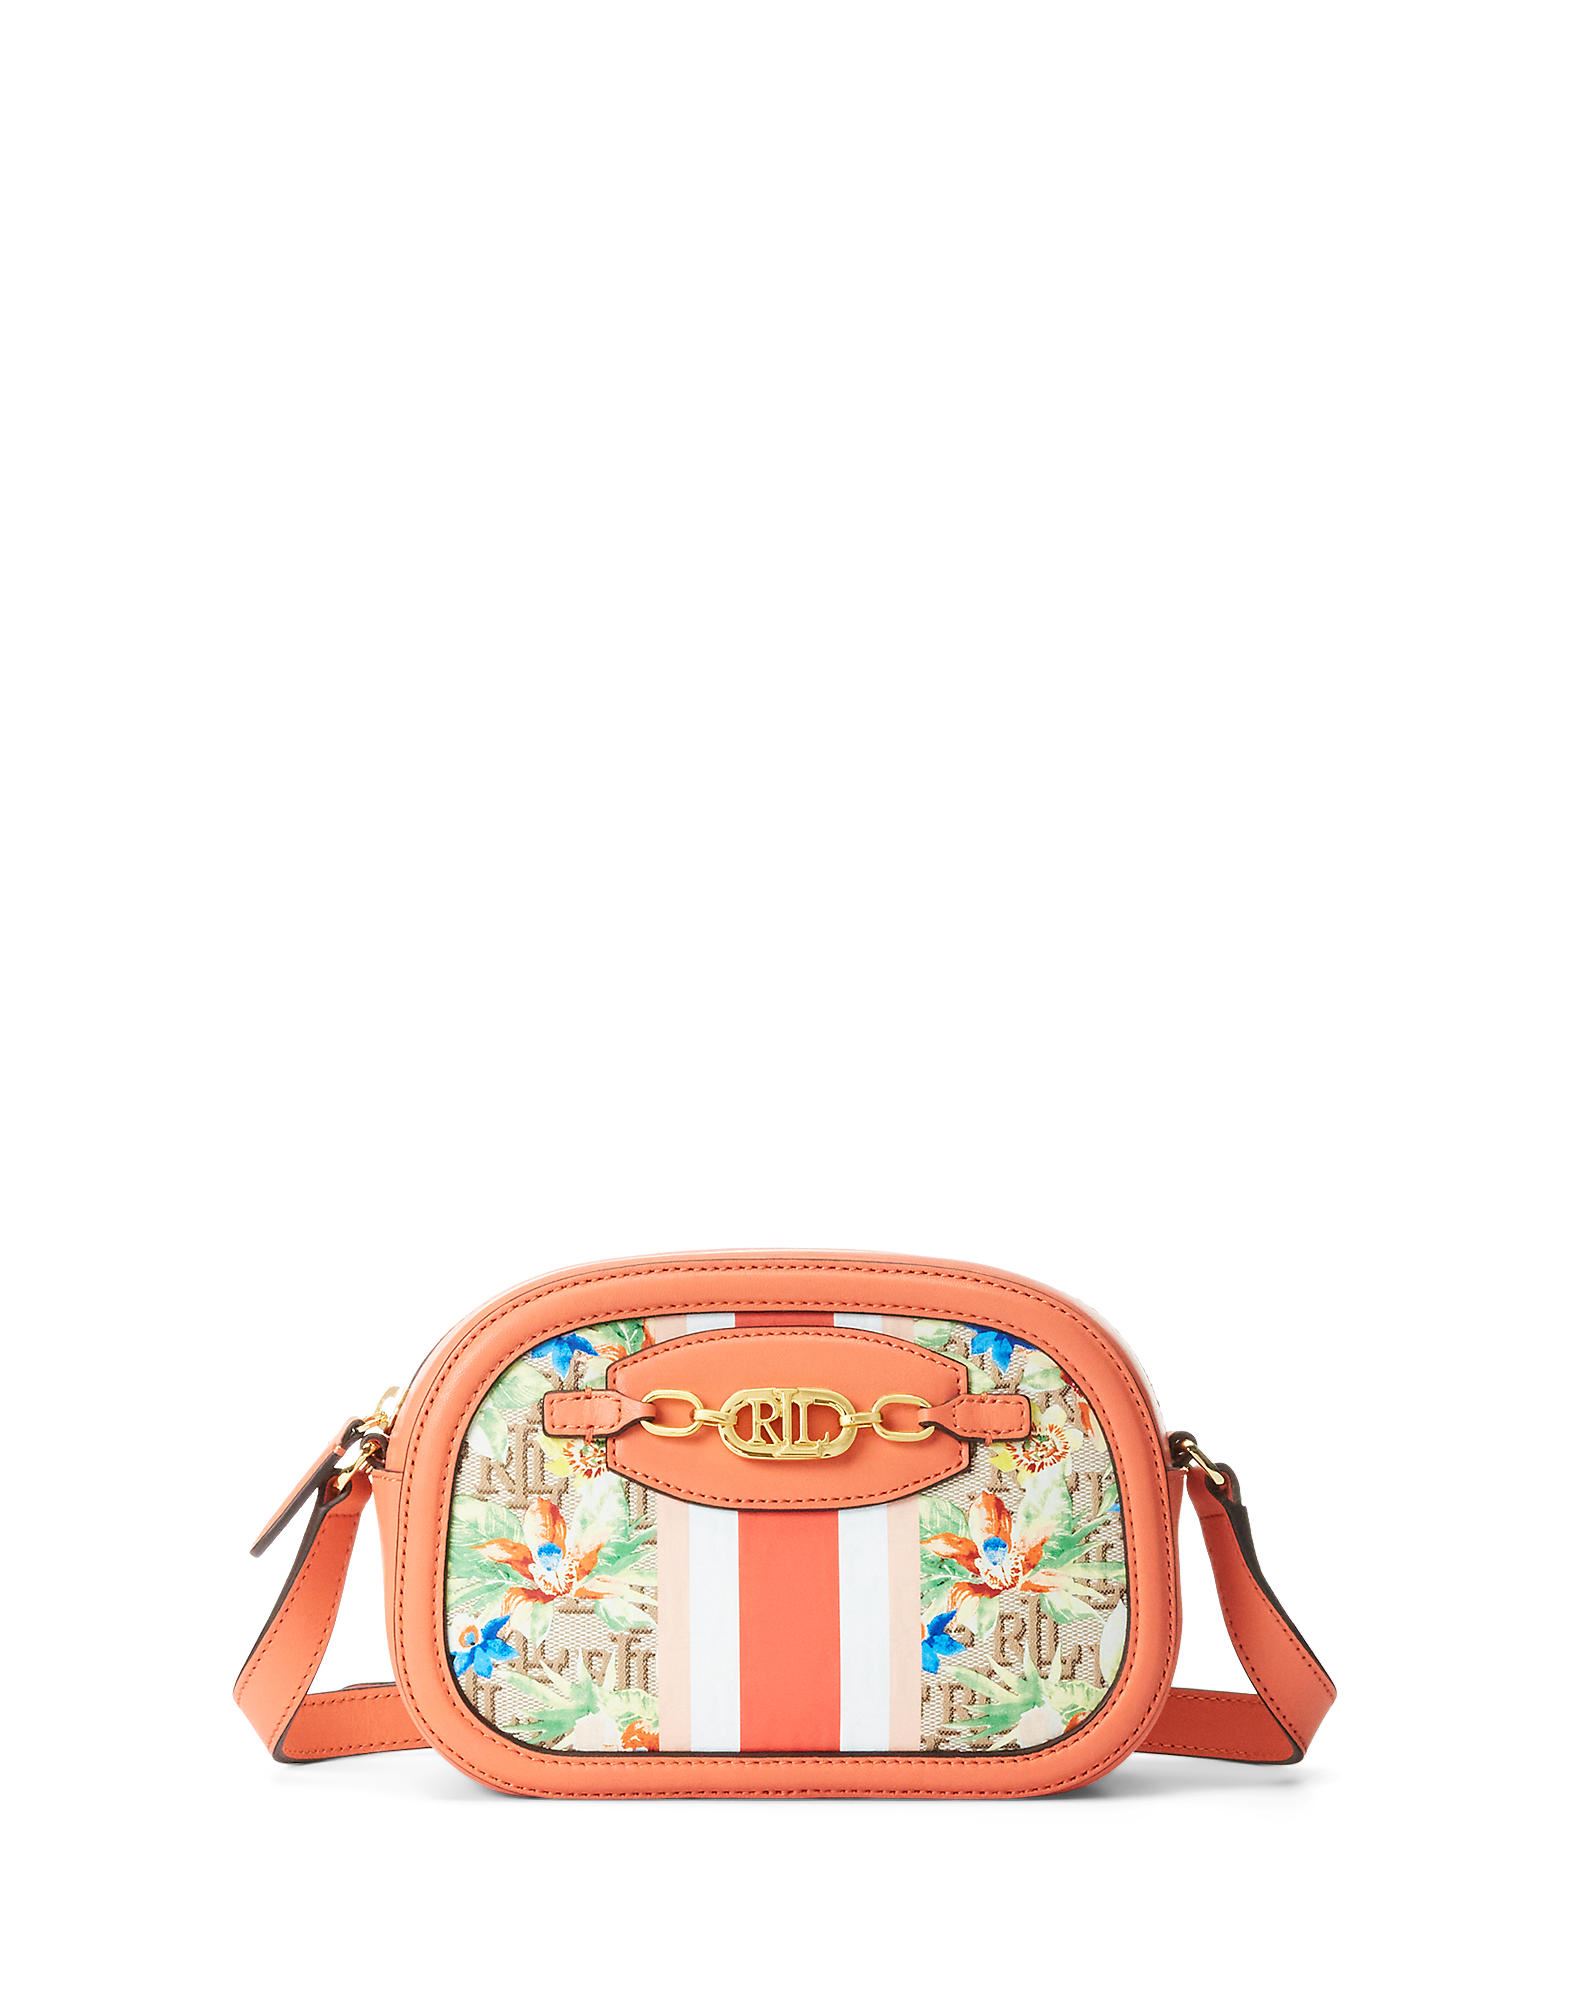 Lauren Ralph Lauren Handbags In Pink